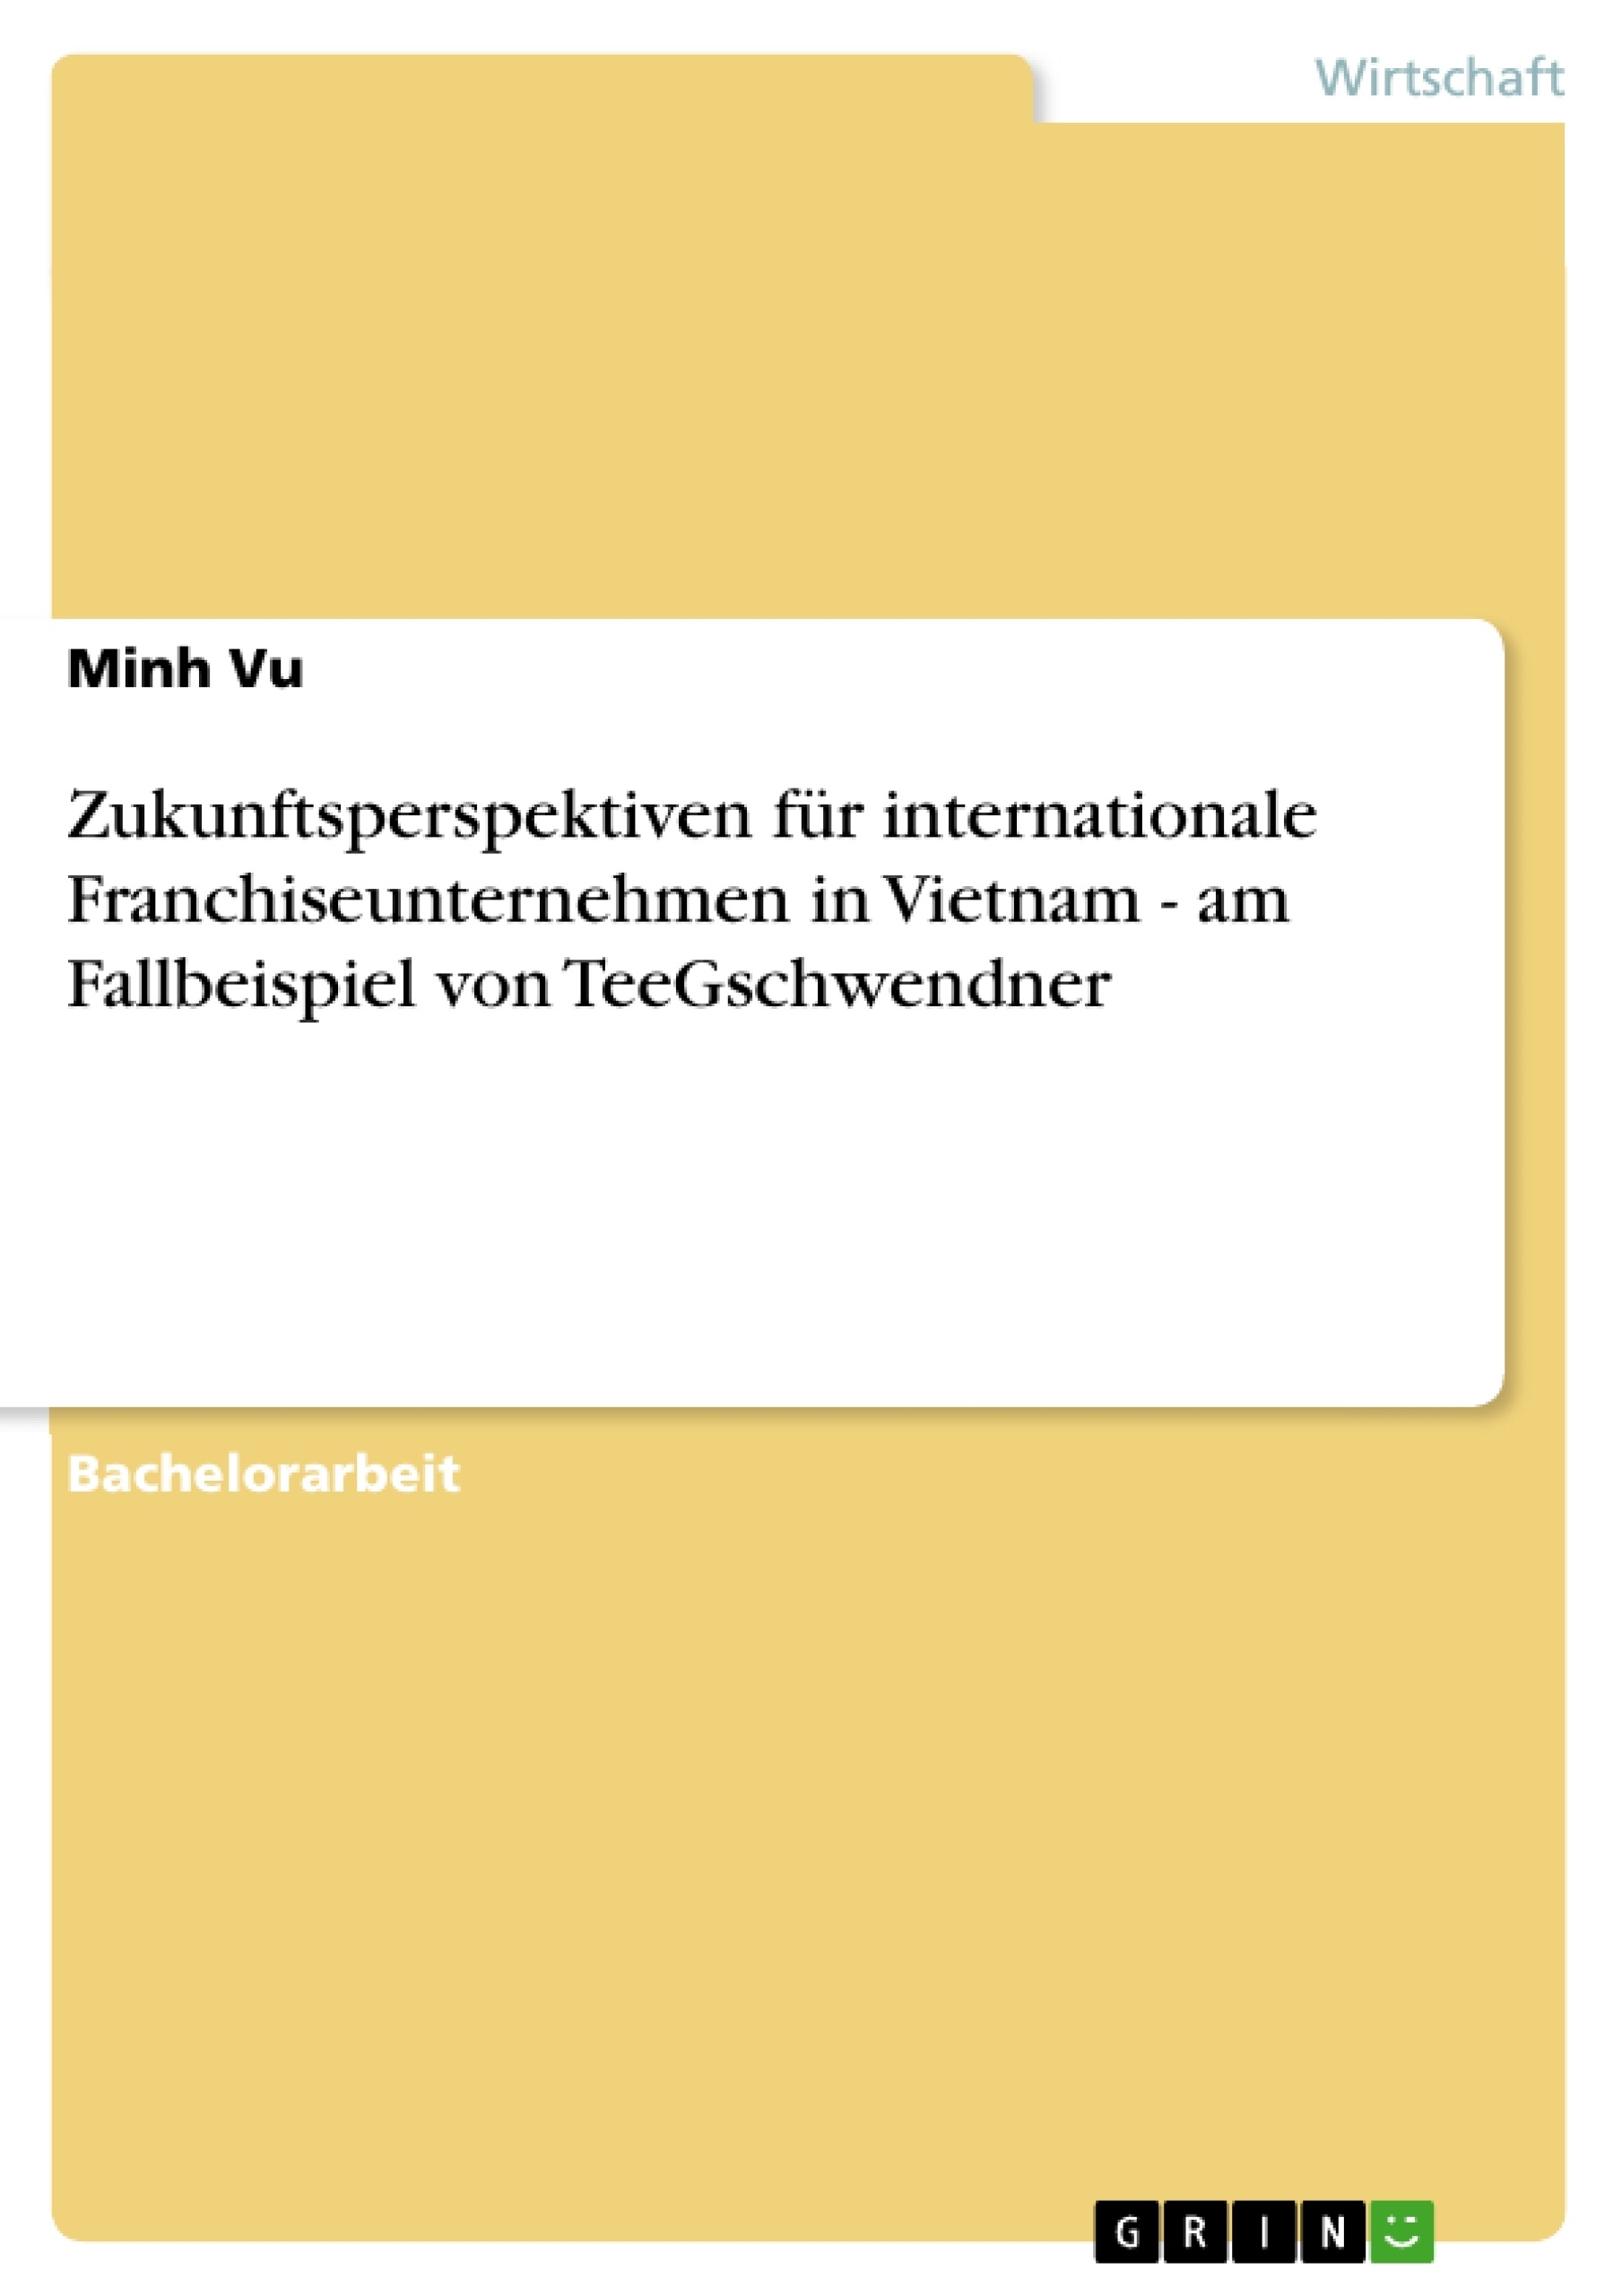 Titre: Zukunftsperspektiven für internationale Franchiseunternehmen in Vietnam - am Fallbeispiel von TeeGschwendner